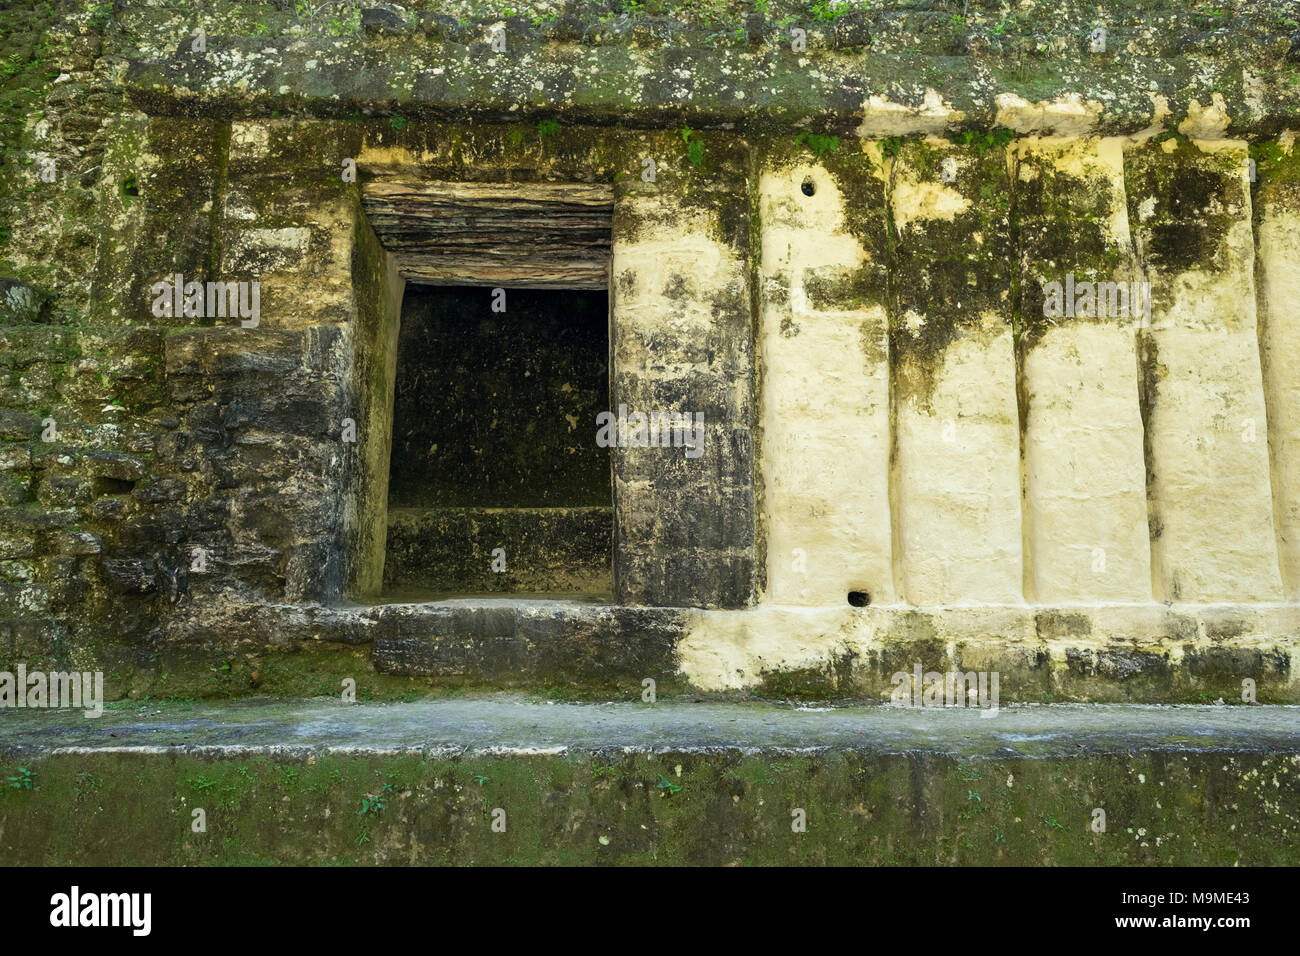 Detail of the ancient Mayan ruins of the Acanaladuras Palace at Tikal, Guatemala Stock Photo